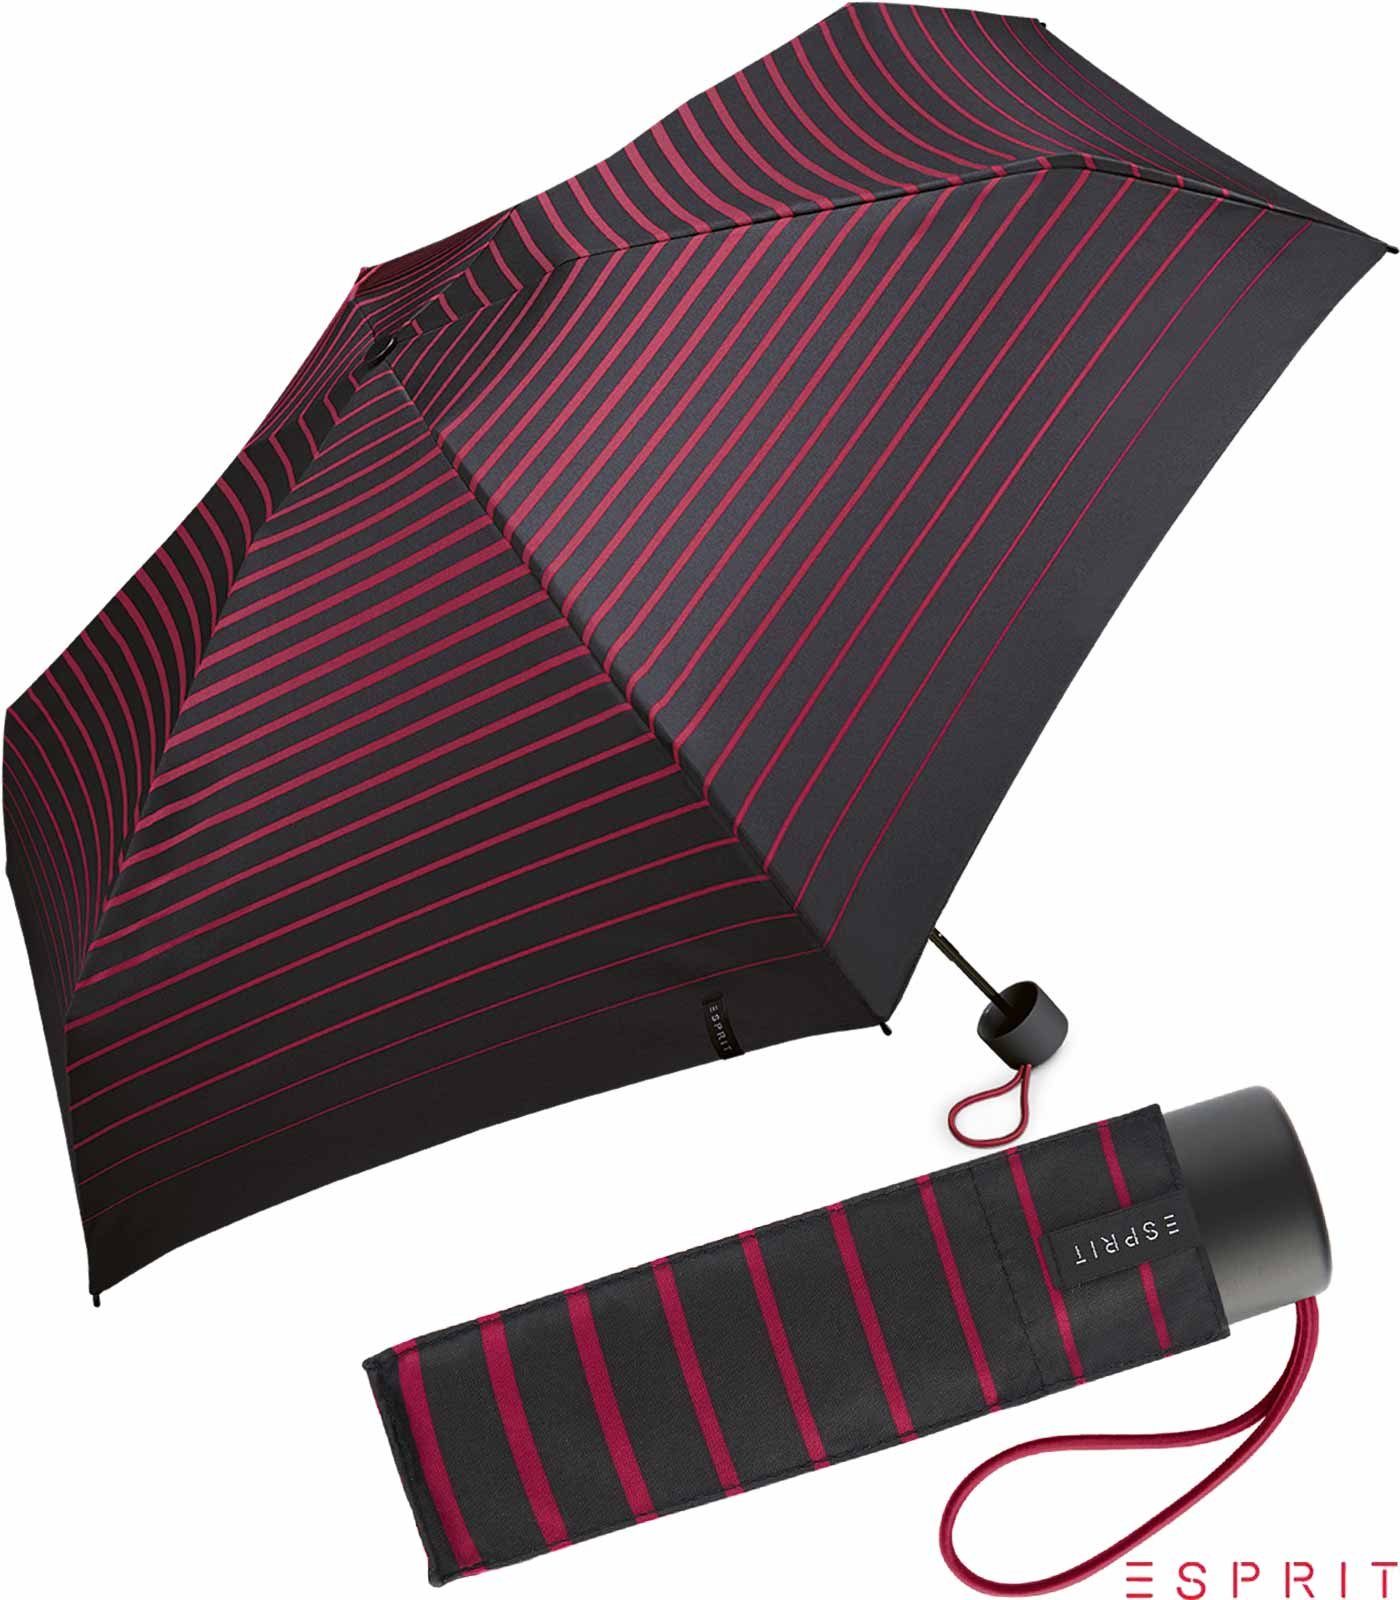 Esprit Taschenregenschirm Damen Super Mini Petito - Degradee Stripe - vivacious pink, winzig klein, in moderner Streifen-Optik schwarz-pink | Taschenschirme